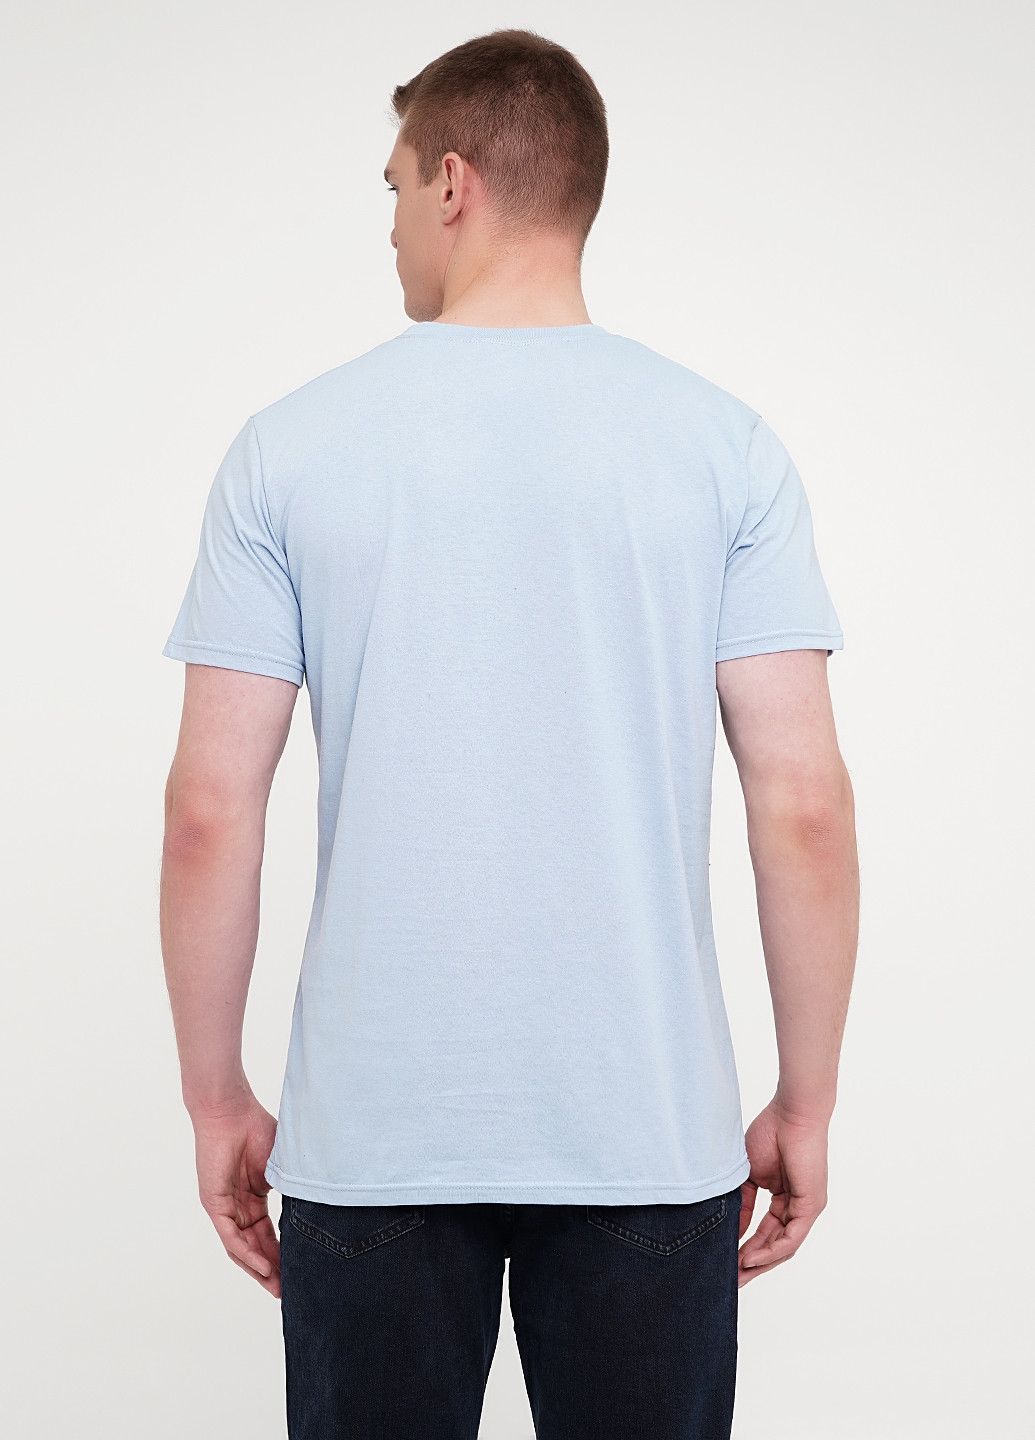 Голубая мужская футболка с принтом "san francisco" KASTA design